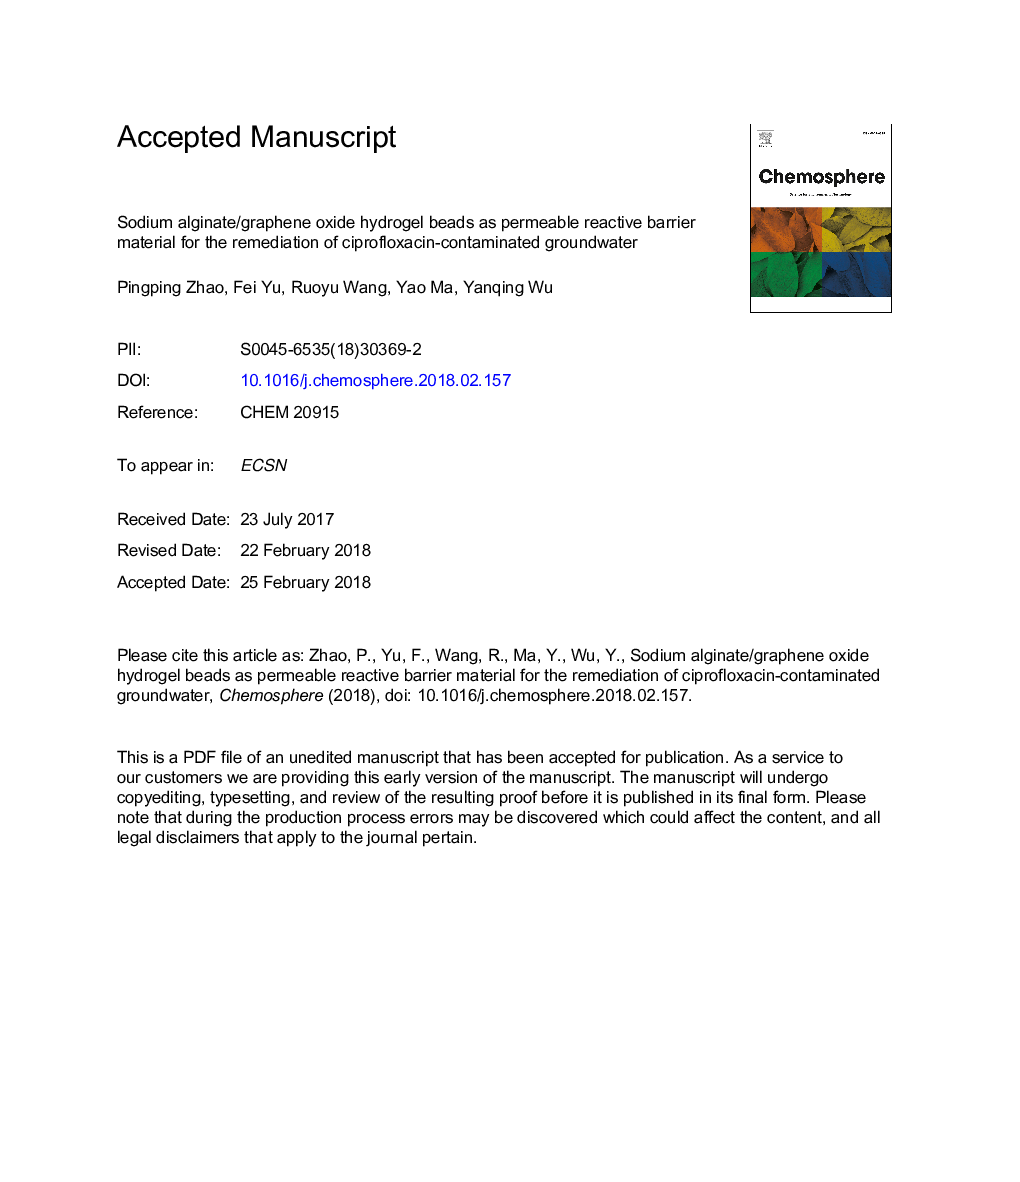 دانه های هیدروژل آلژینات سدیم / گرافین اکسید به عنوان ماده مانع نفوذی واکنش دهنده برای احیای آبهای زیرزمینی آلوده به سیپروفلوکساسین 